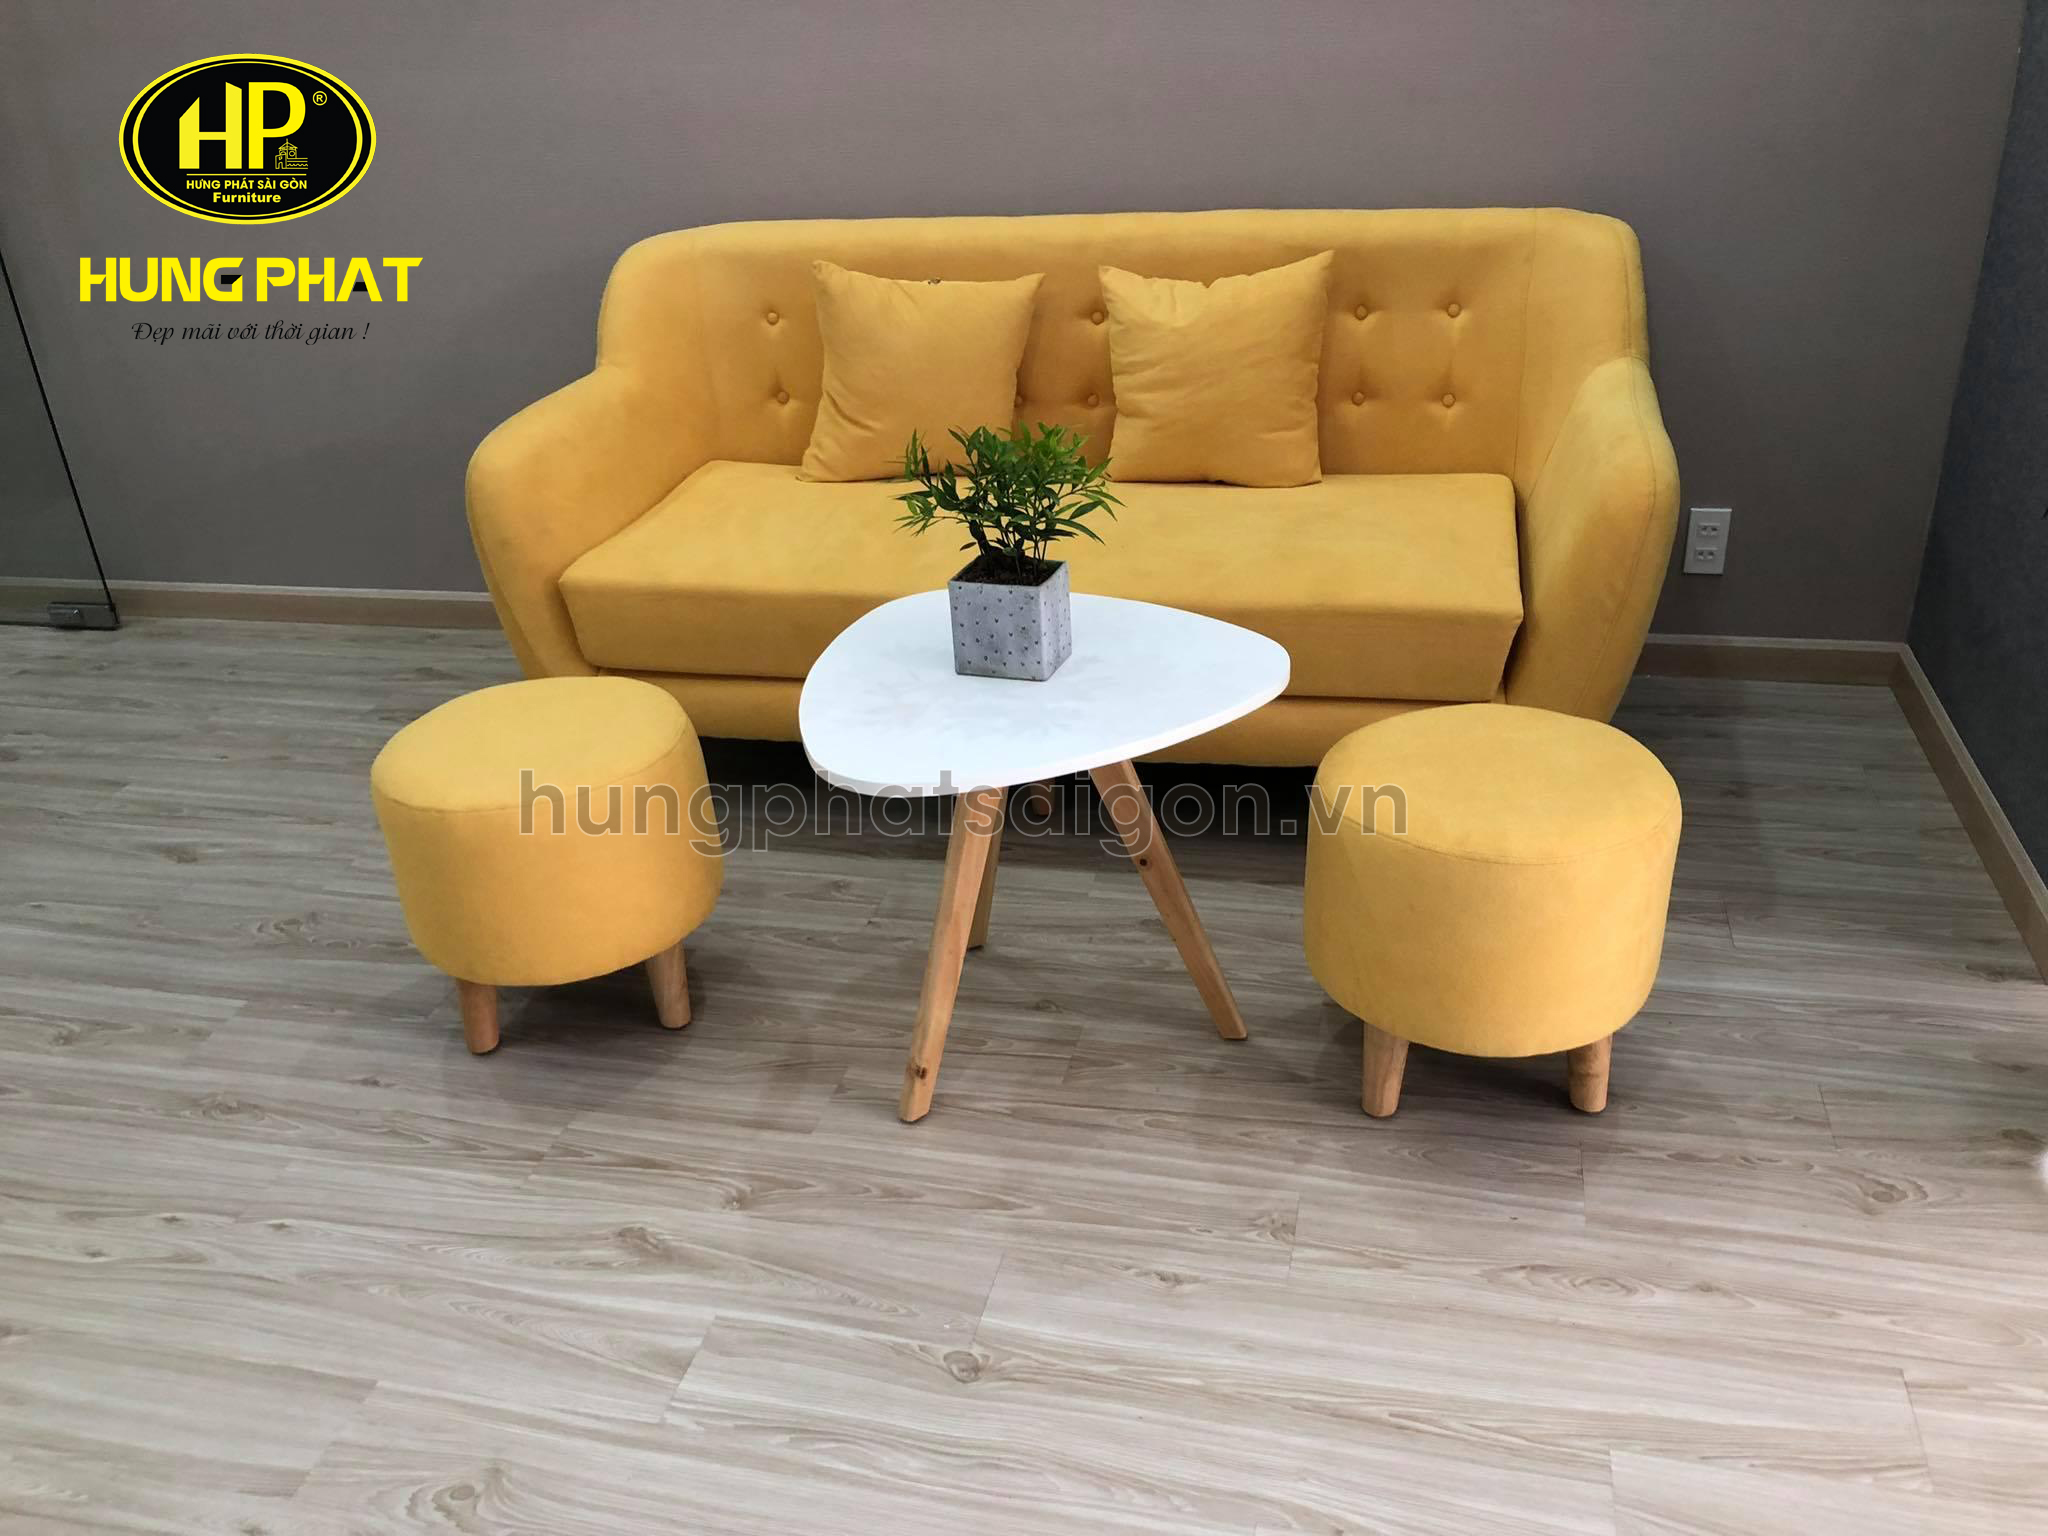 Ghế sofa vải bố H-53A màu vàng năng động của nội thất Hưng Phát Sài Gòn 